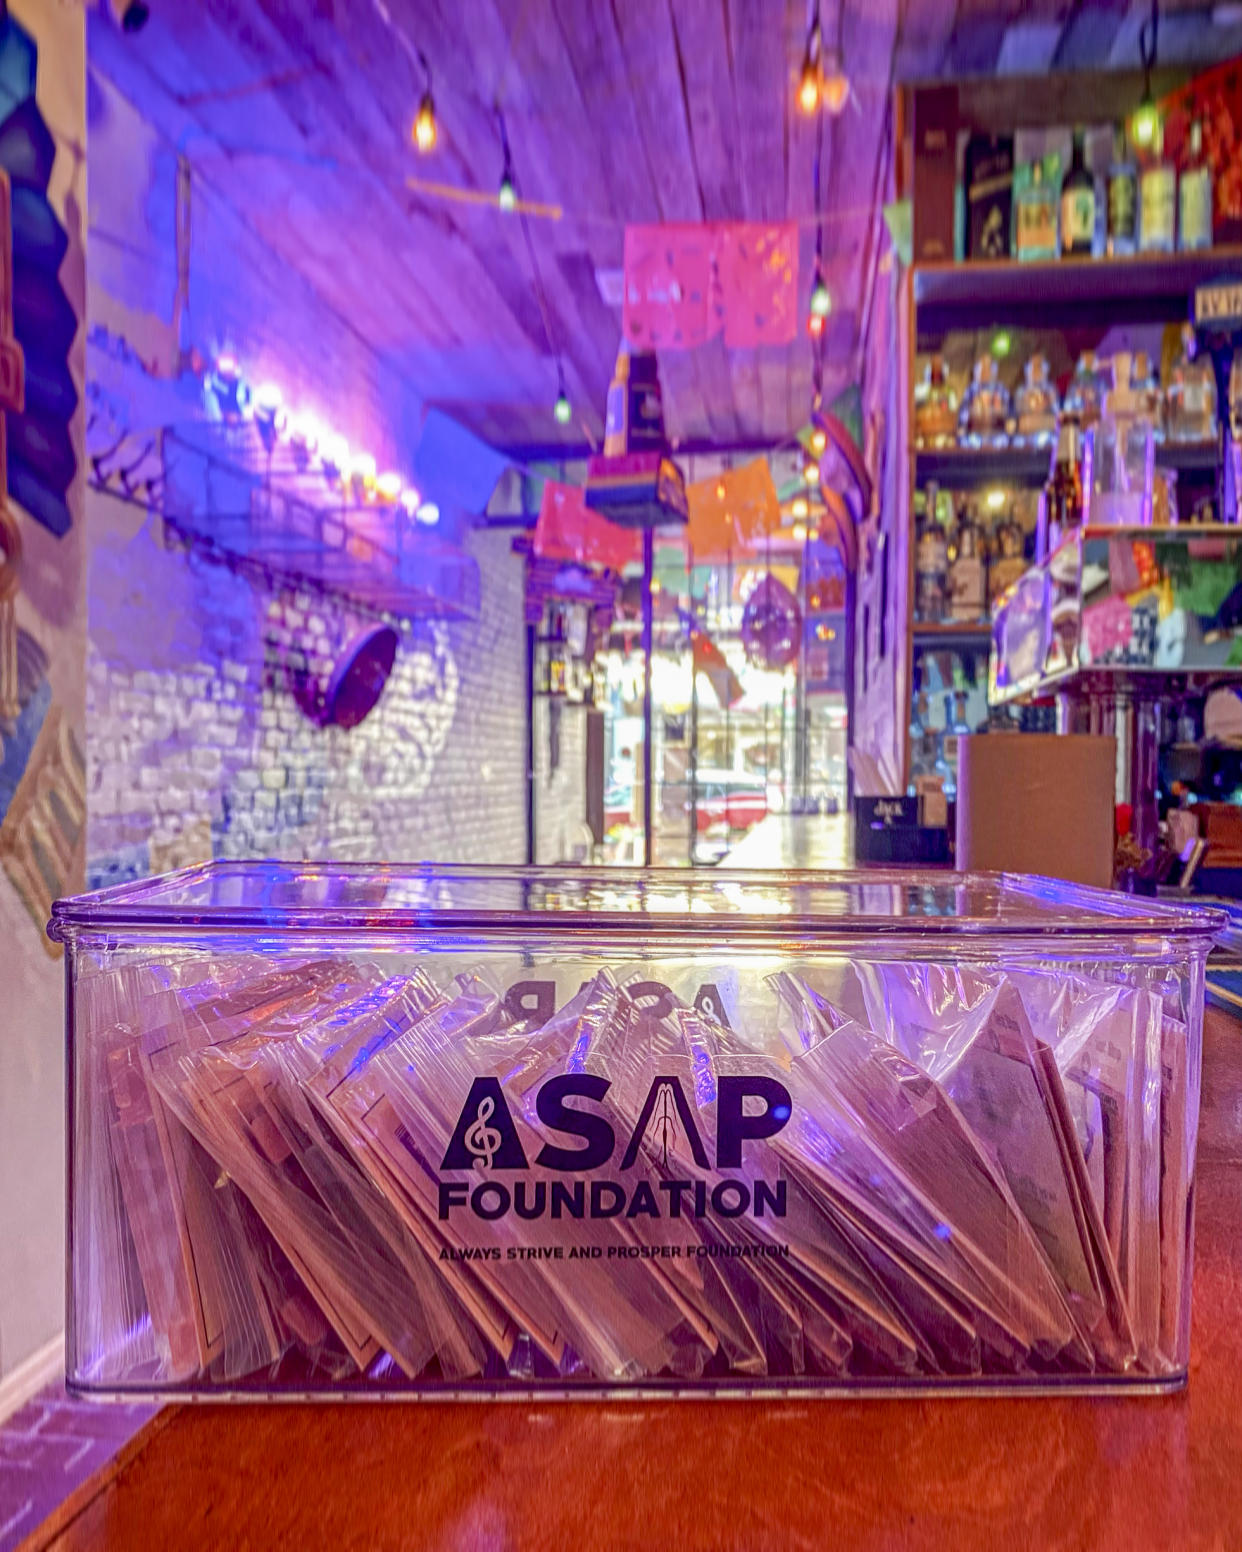 Una foto proporcionada por la Fundación A$AP muestra el restaurante mexicano Mictlan ubicado en el Lower East Side en Manhattan, el cual le ofrece tiras de fentanilo a sus clientes. (Fundación A$AP vía The New York Times)